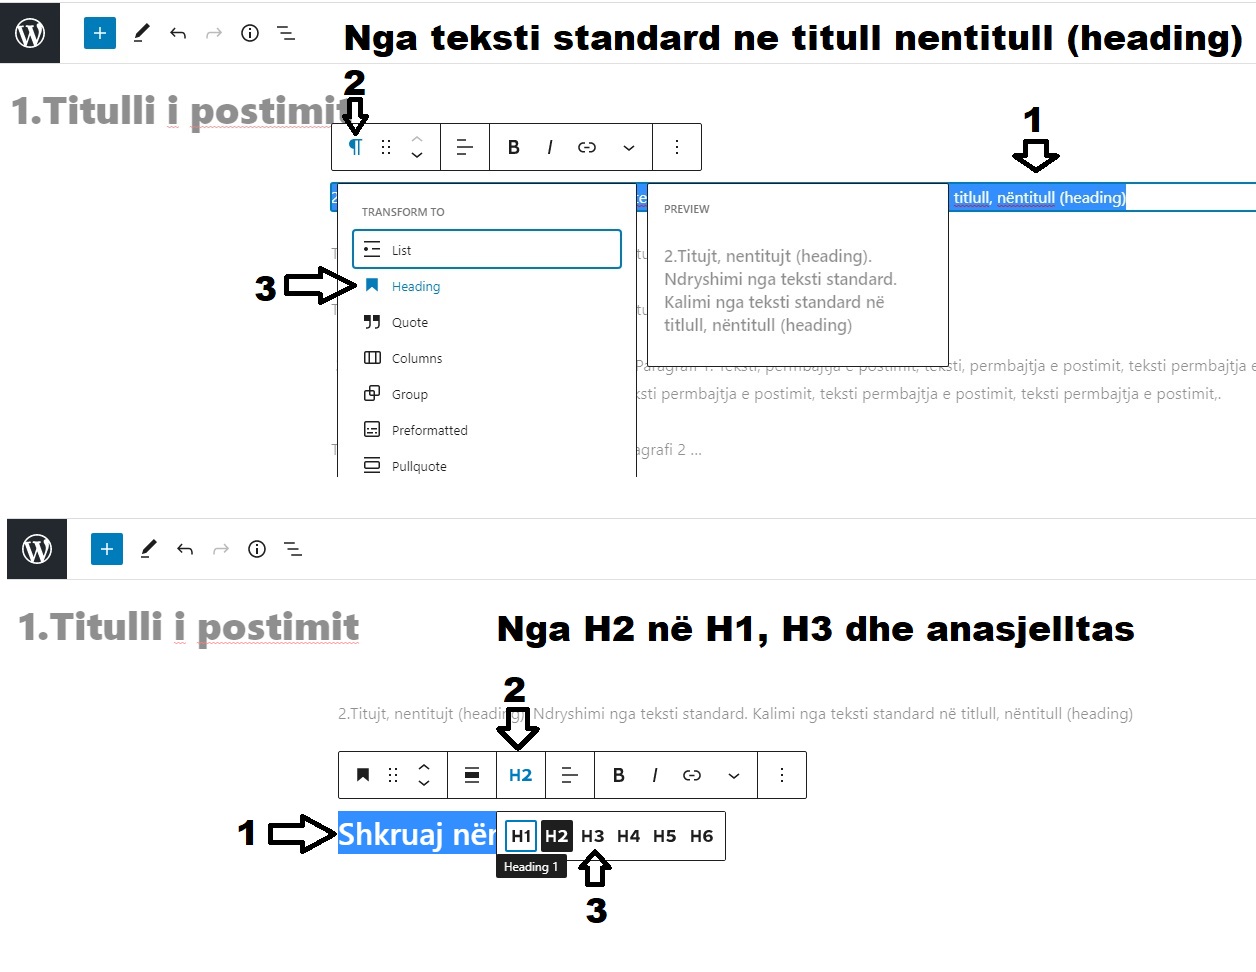 Transformimi nga tekst standard (Paragraph) në titull, nëntitull (Heading) dhe transformimi nga H2 në H1, H3, H4 dhe anasjelltas.